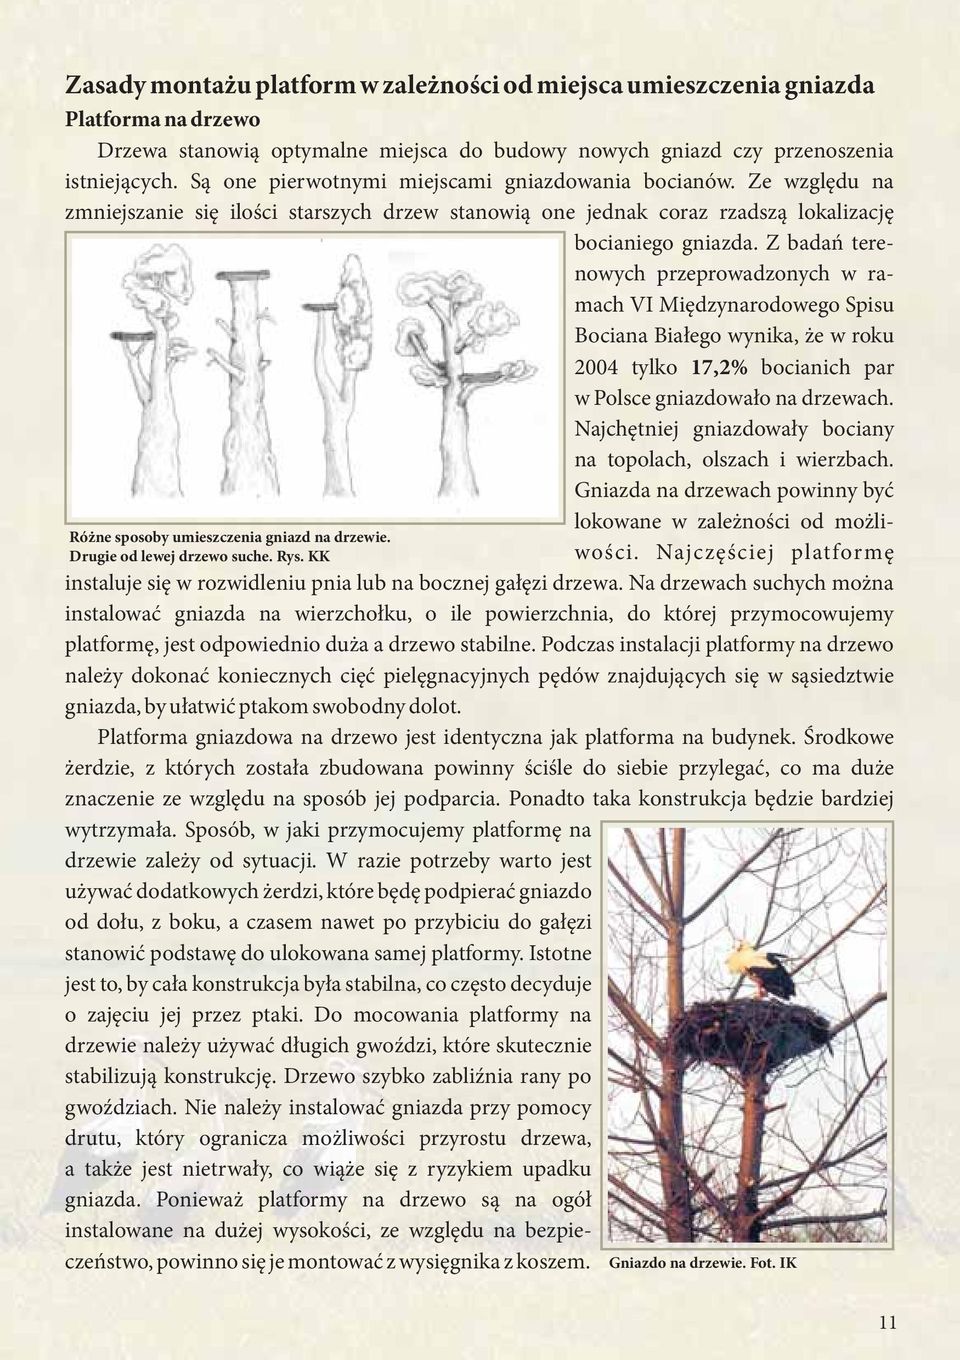 Z badań terenowych przeprowadzonych w ramach VI Międzynarodowego Spisu Bociana Białego wynika, że w roku 2004 tylko 17,2% bocianich par w Polsce gniazdowało na drzewach.